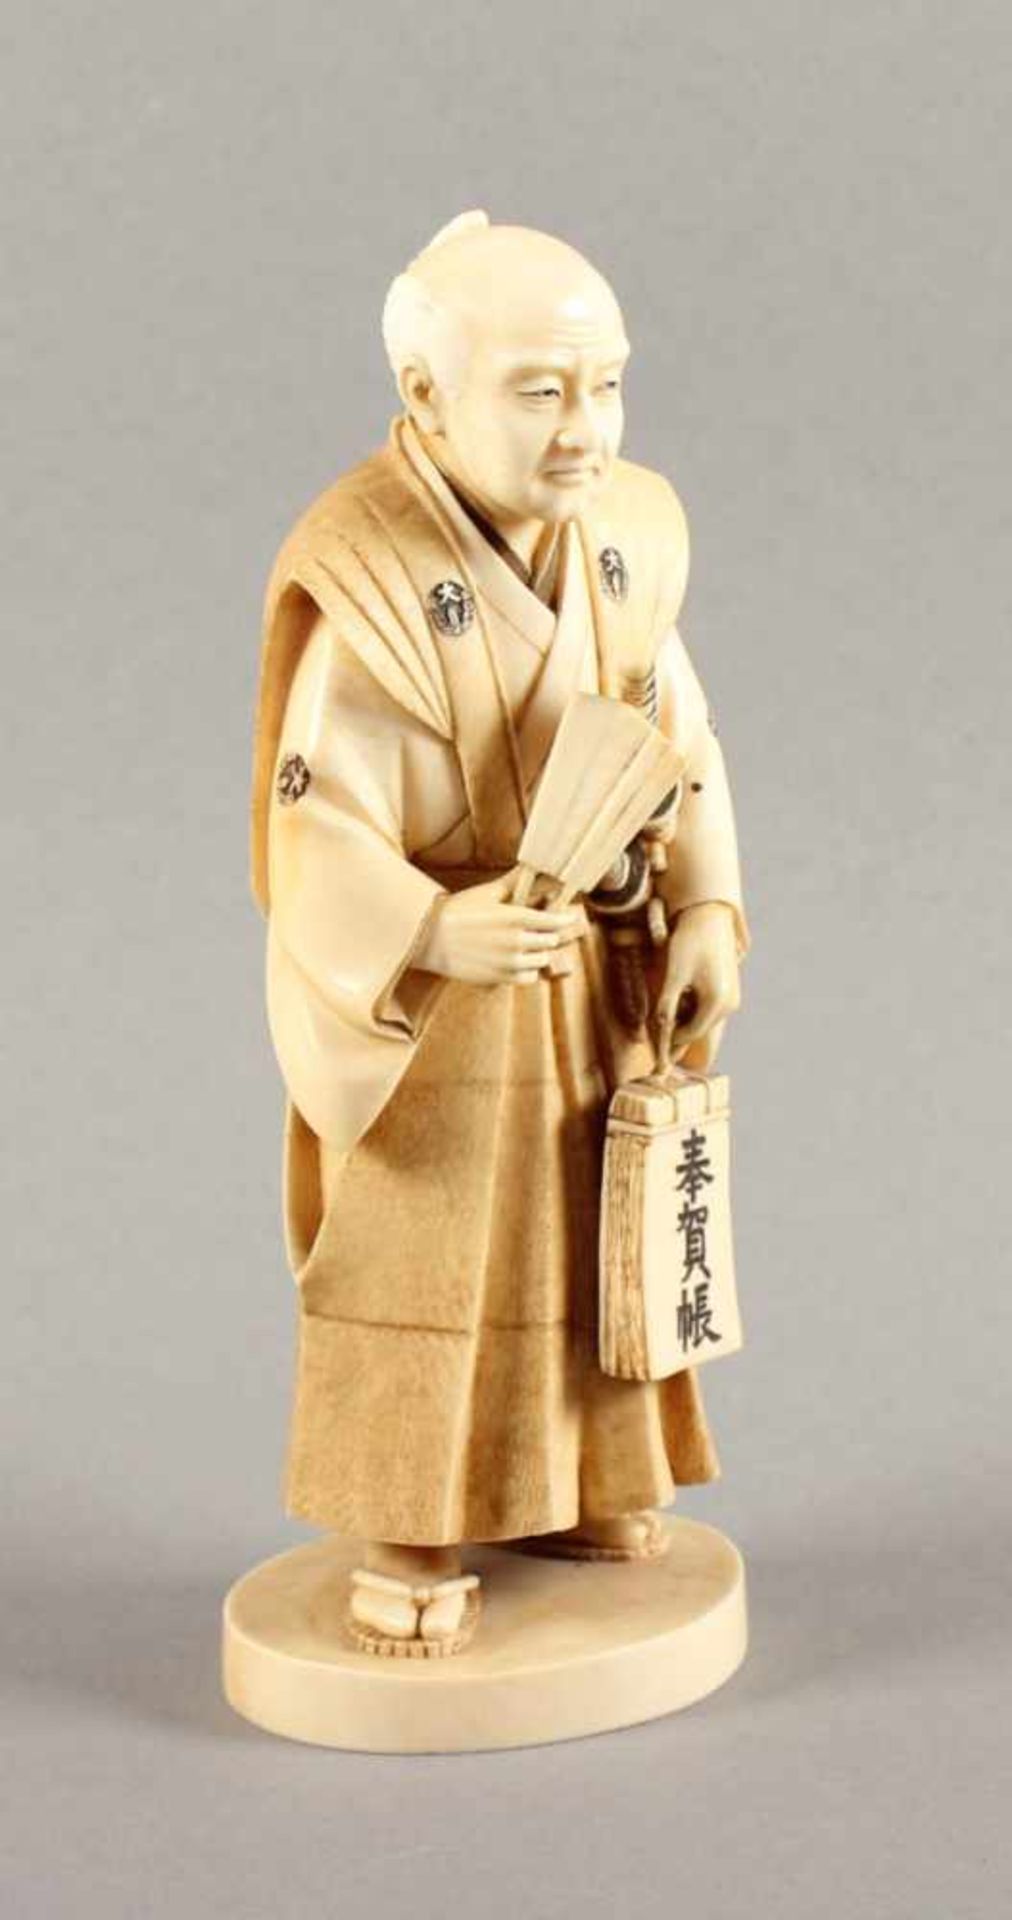 GROSSES OKIMONO "SAMURAI", Elfenbein, sehr fein geschnitzt, auf einer runden Sockelplatte steht - Bild 3 aus 6